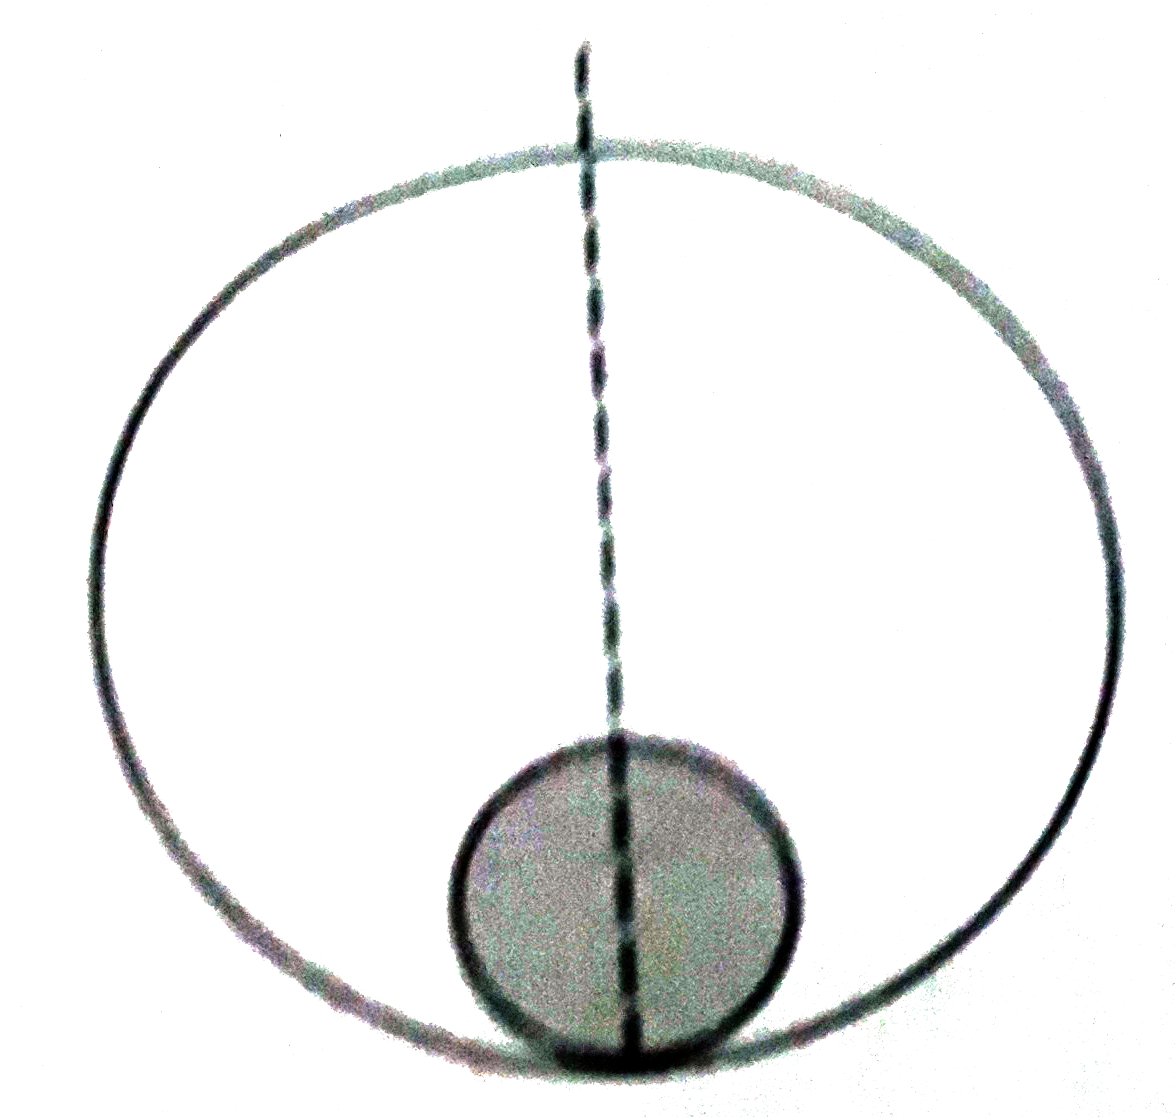 चित्र 20.E2 में m द्रव्यमान  एवं r   त्रिज्या  का एक  ठोस  गोला M  द्रव्यमान  एवं R   त्रिज्या  वाले एक  पतले  गोलीय  कोश  में रखा  हुआ है।  दोनो  के केद्रो  को मिलानेवाली  रेखा  पर एवं गोले  तथा  कोश  के  संपर्क- बिंदु से x दूरी पर m द्रव्यमान  का एक कण  रखा गया है। इस  कण पर गोले  तथा  कोश के  कारण  लगनेवाले  परिणामी  गुरूत्वीय  बल  का परिमाण  ज्ञात करें  यदि।    (a) r lt x lt 2r  , ( b)  2 r  lt x lt 2R  तथा  ( c)  x gt 2R